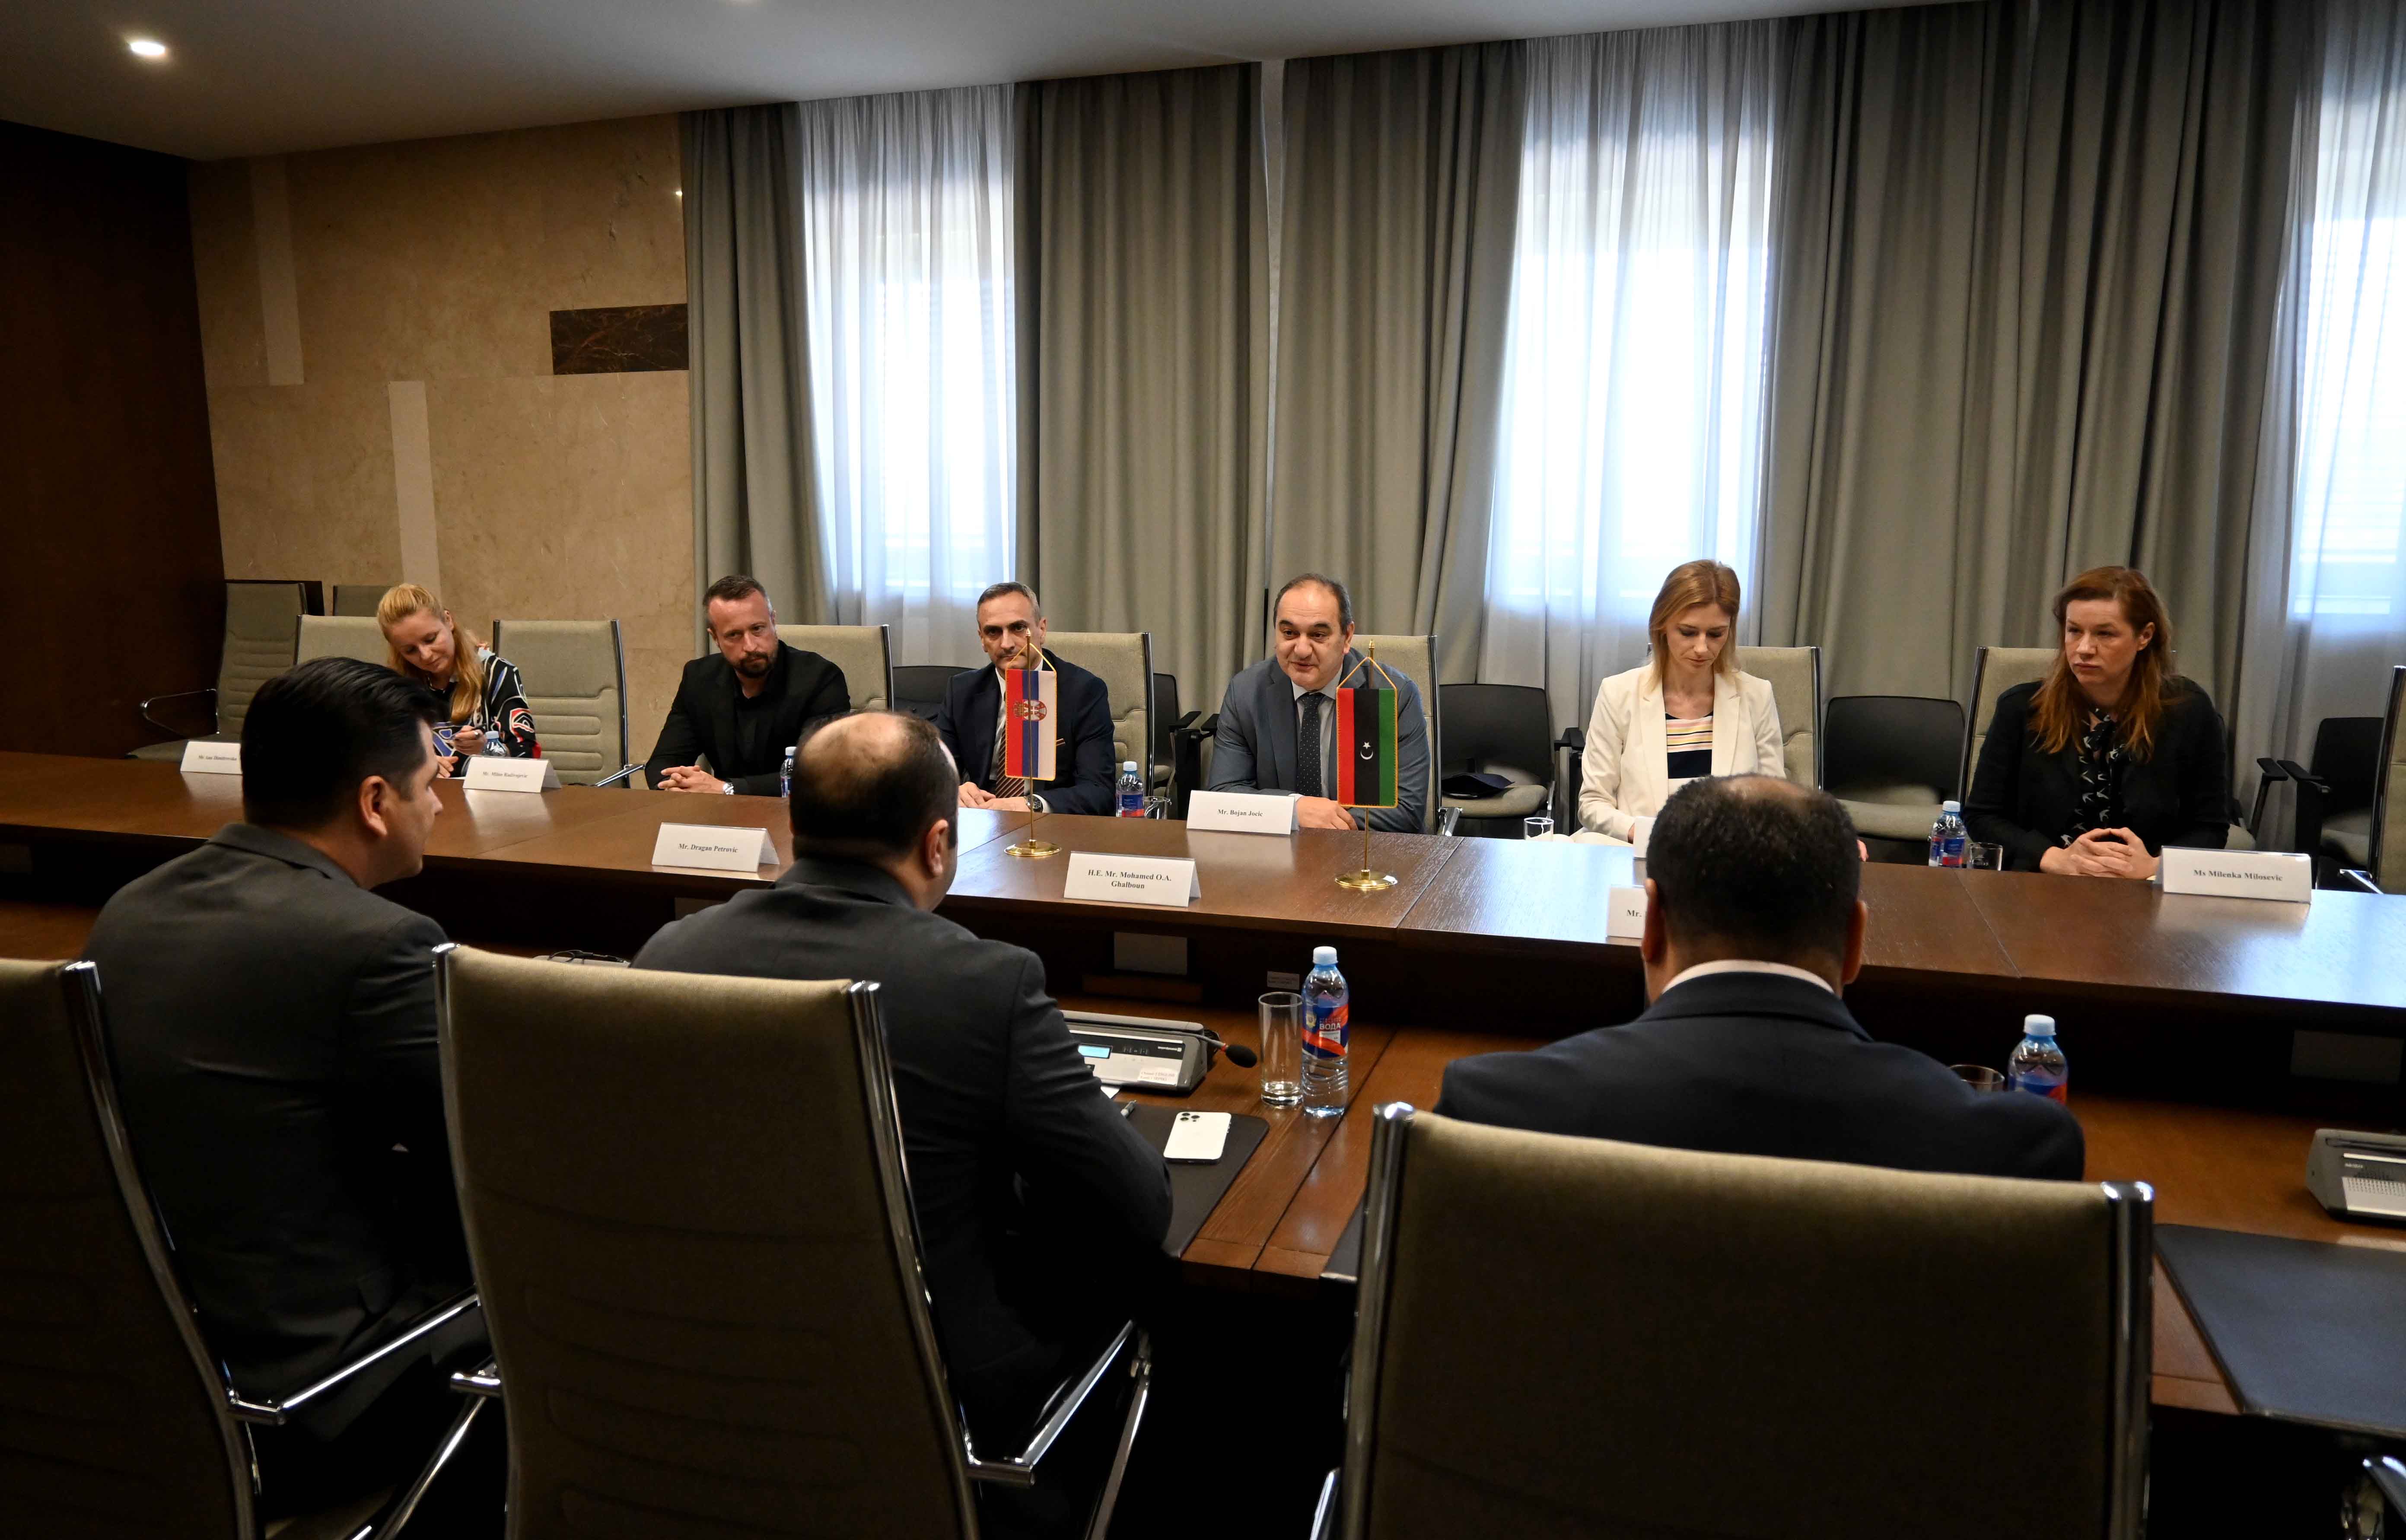 Државни секретар Јоцић и амбасадор Галбун разговарали о успостављању сарадње у области образовања